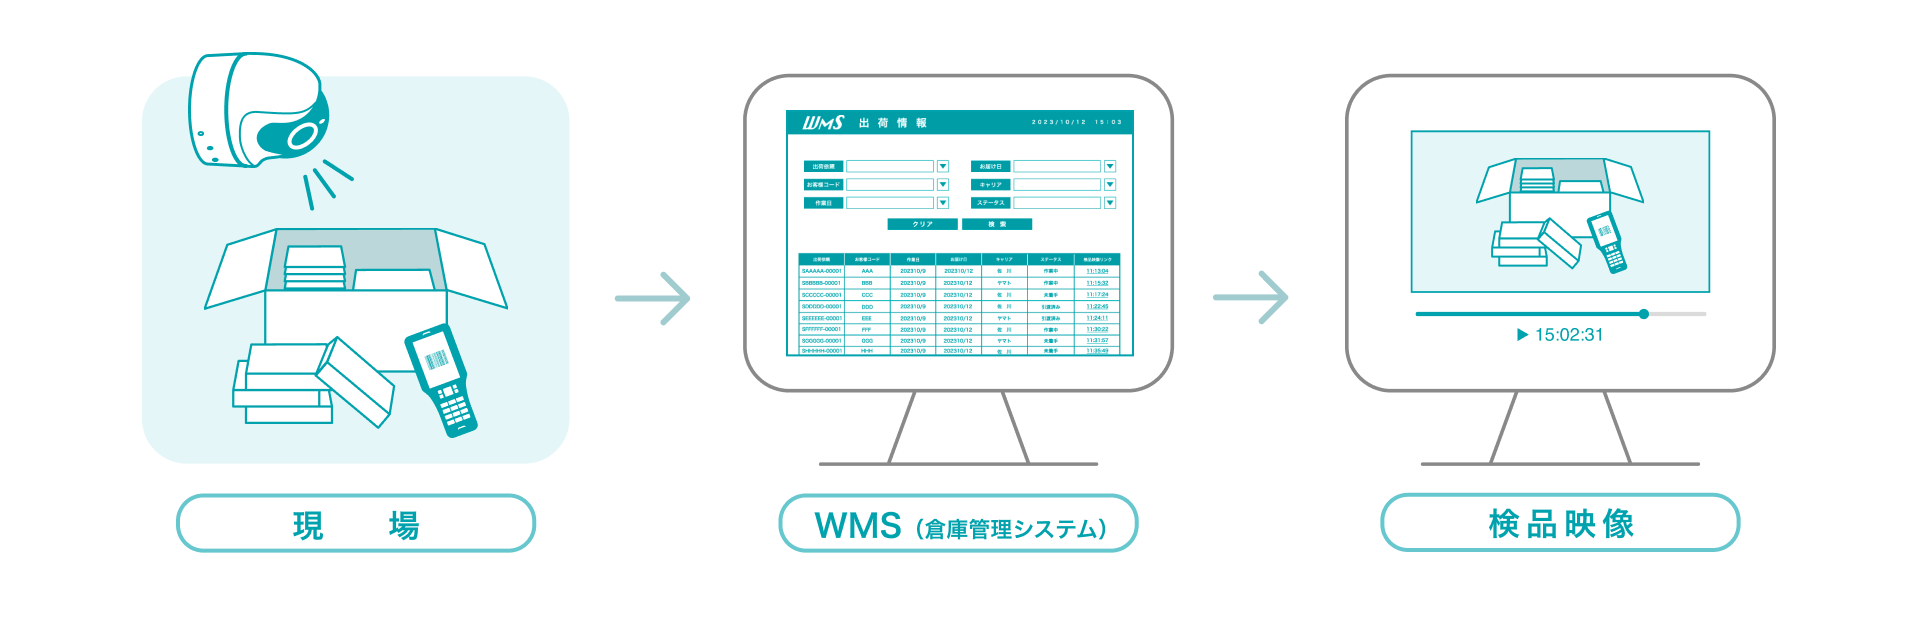 現場 WMS（倉庫管理システム） 検品映像